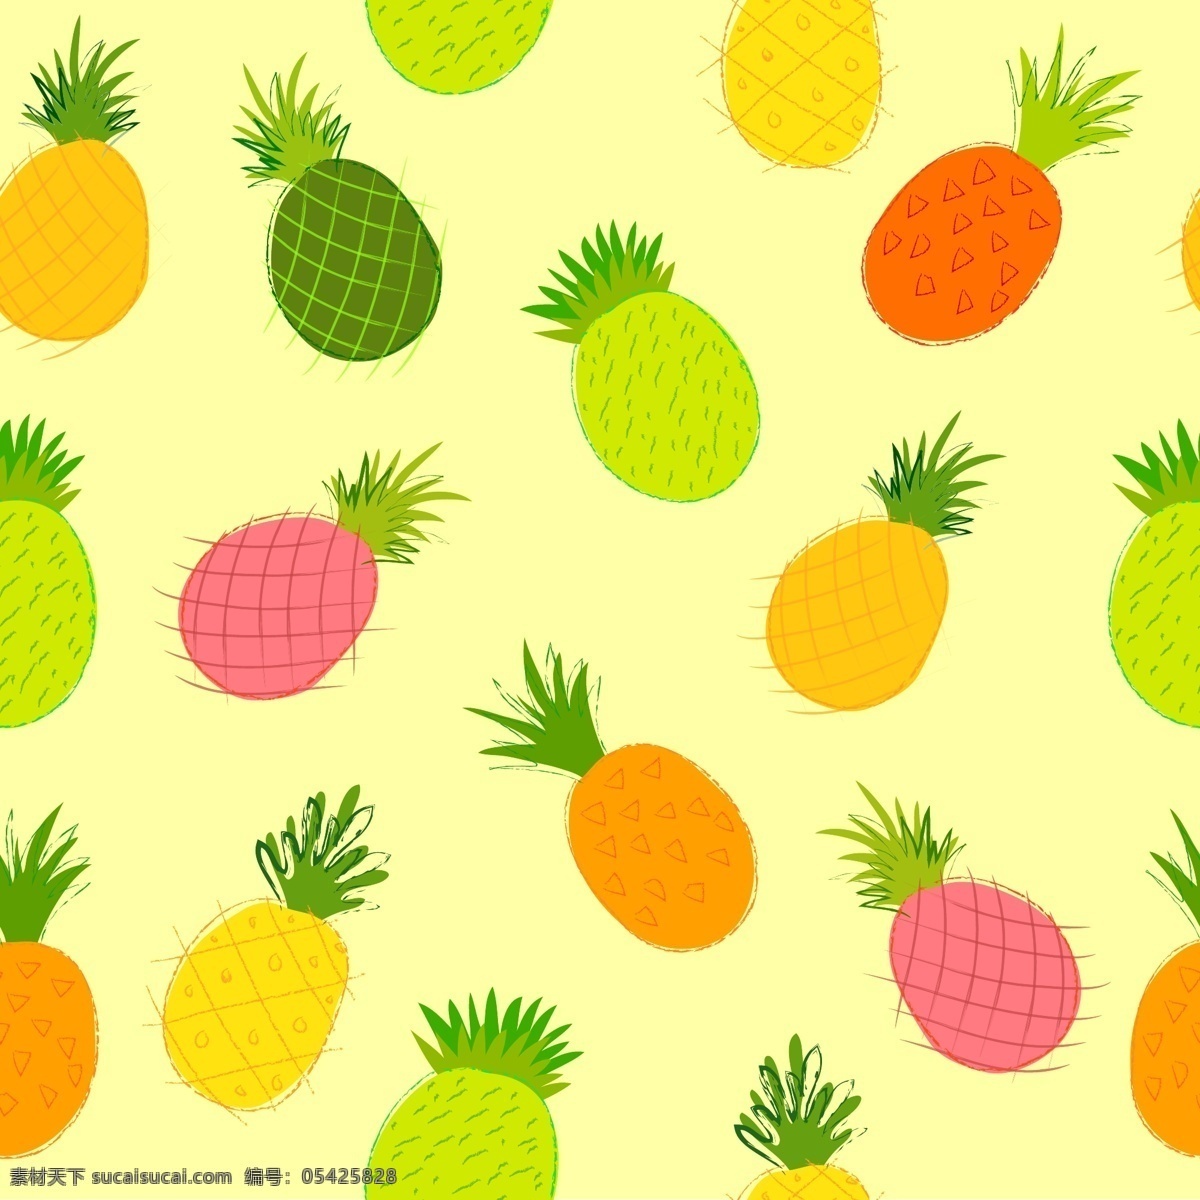 菠萝 水果 新鲜菠萝 菠萝底纹 矢量菠萝 菠萝汁 食品蔬菜水果 生物世界